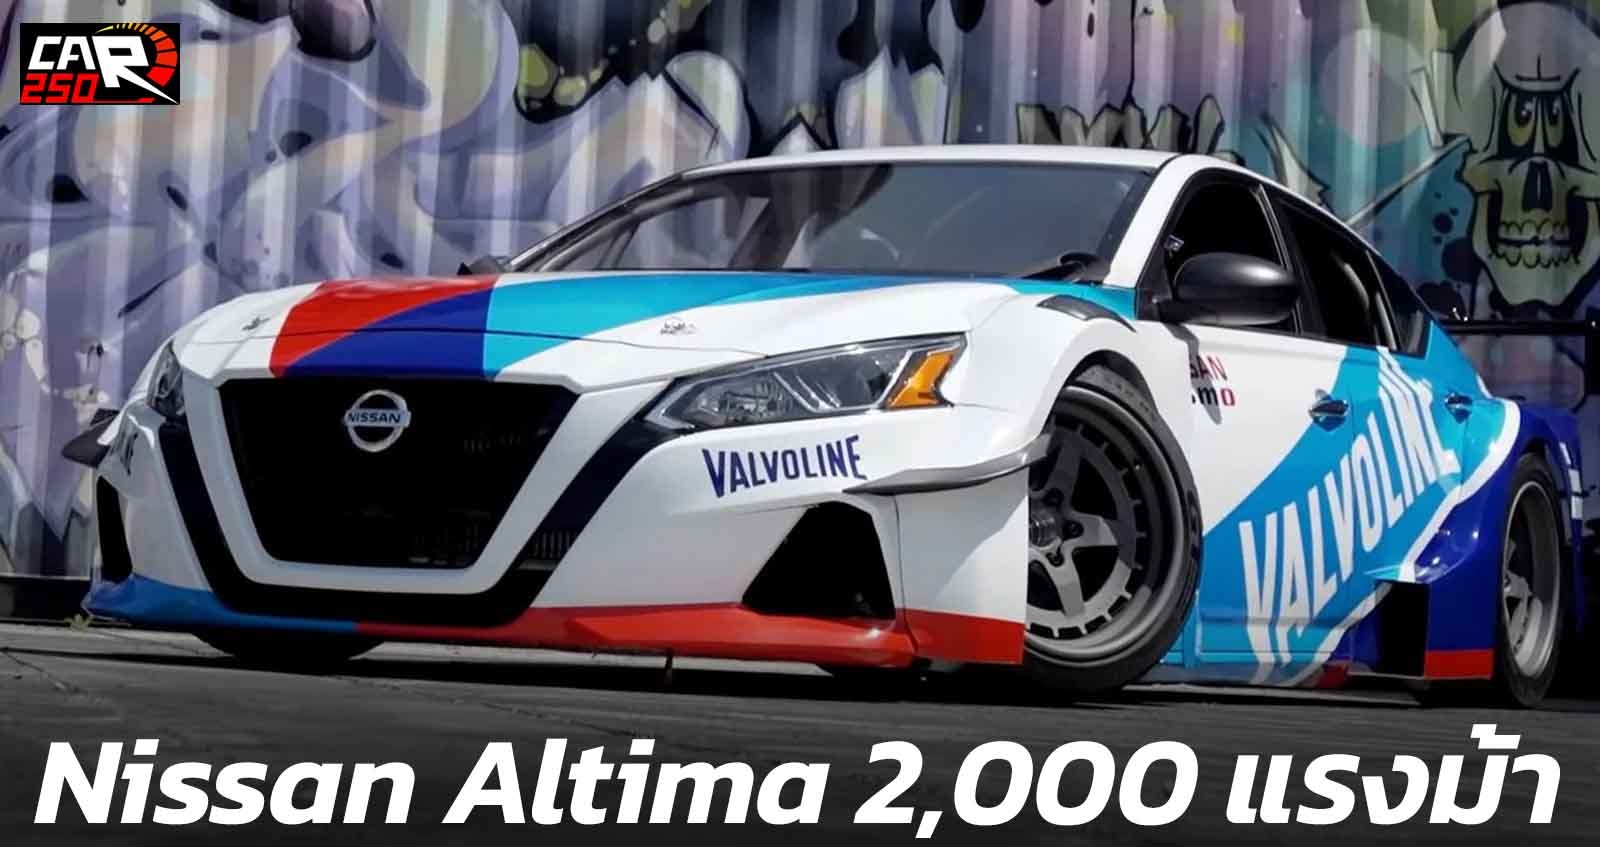 Nissan Altima ให้กำลัง 2,000 แรงม้า ปรับแต่งพิเศษ (VDO)